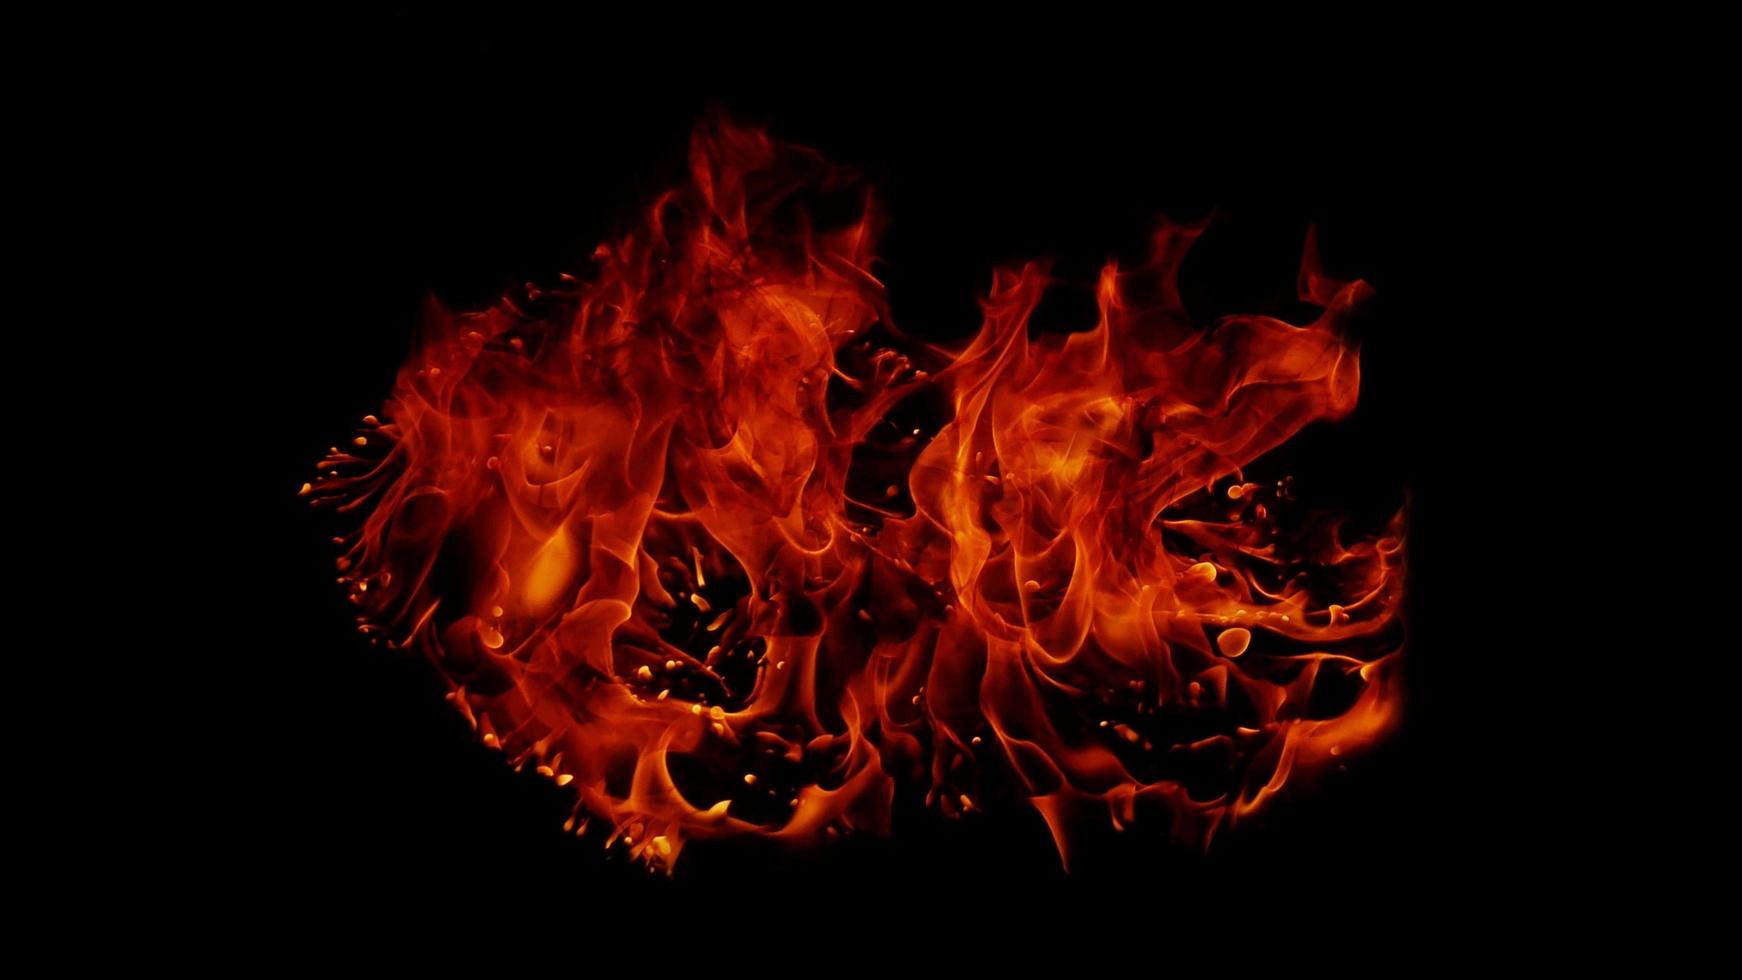 una hermosa llama con la forma imaginada. como del infierno, mostrando un fervor peligroso y ardiente, fondo negro foto